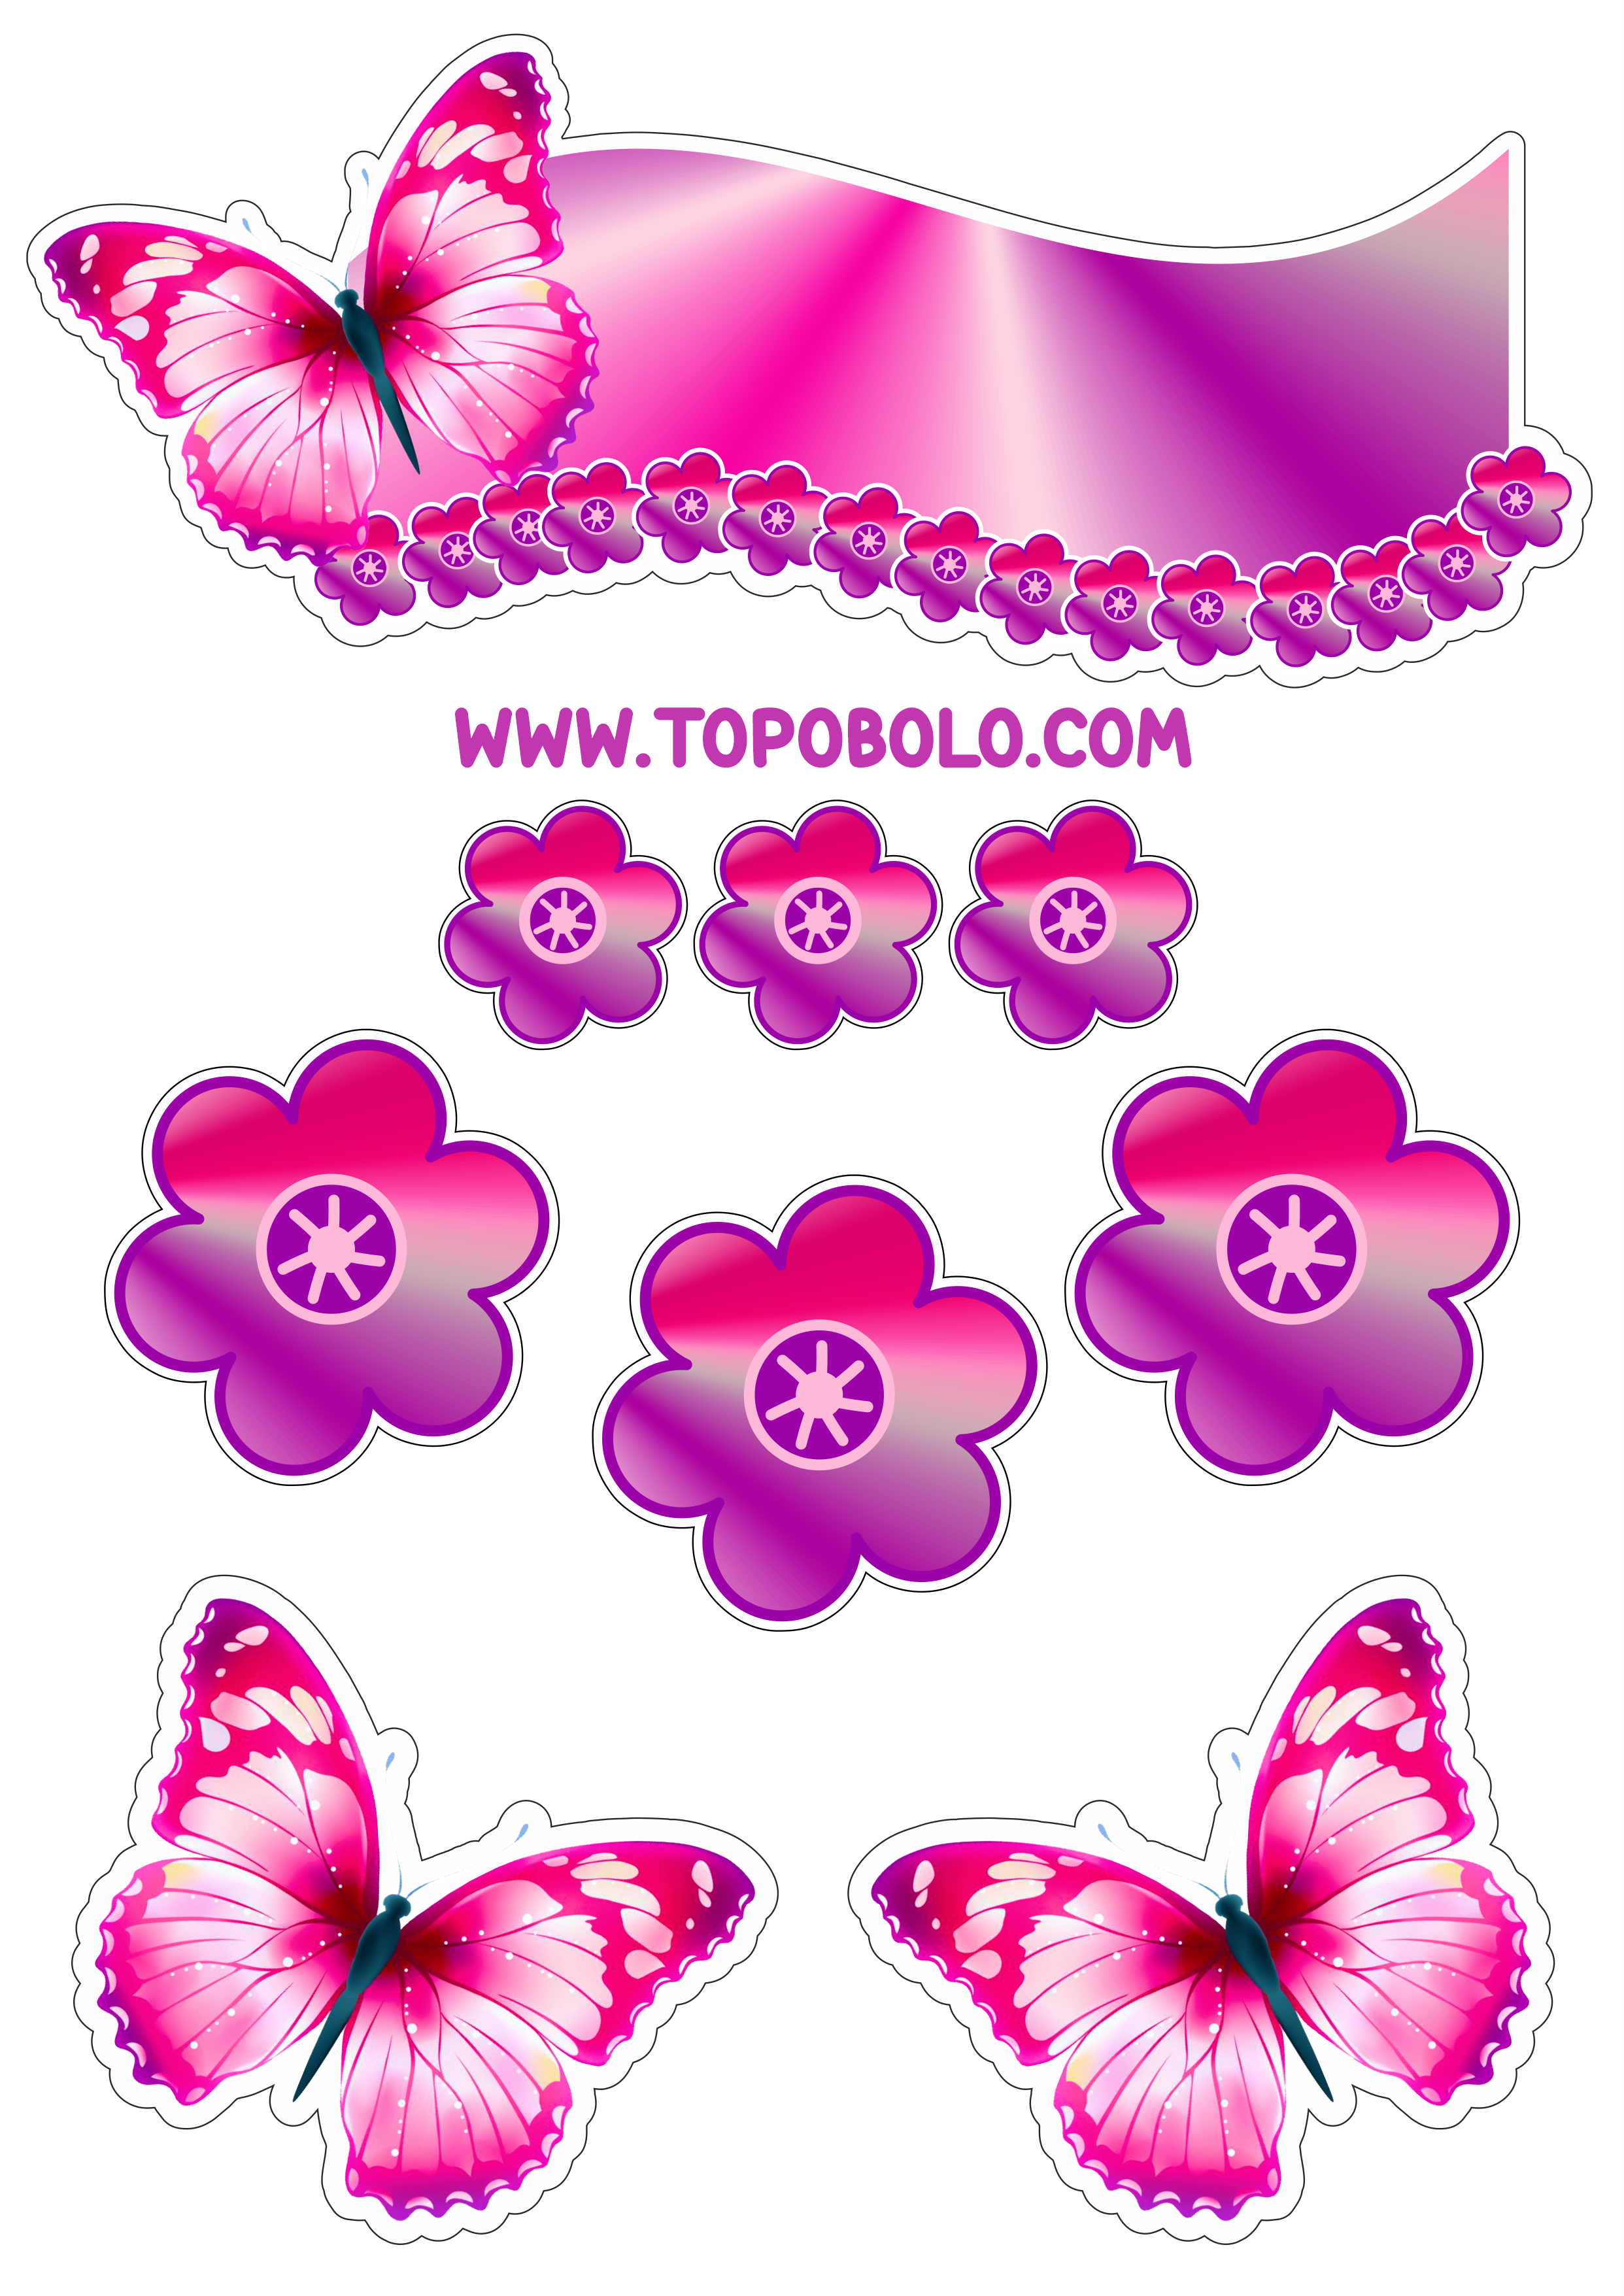 Topo de bolo para baixar borboletas e flores coloridas decoração de aniversário png